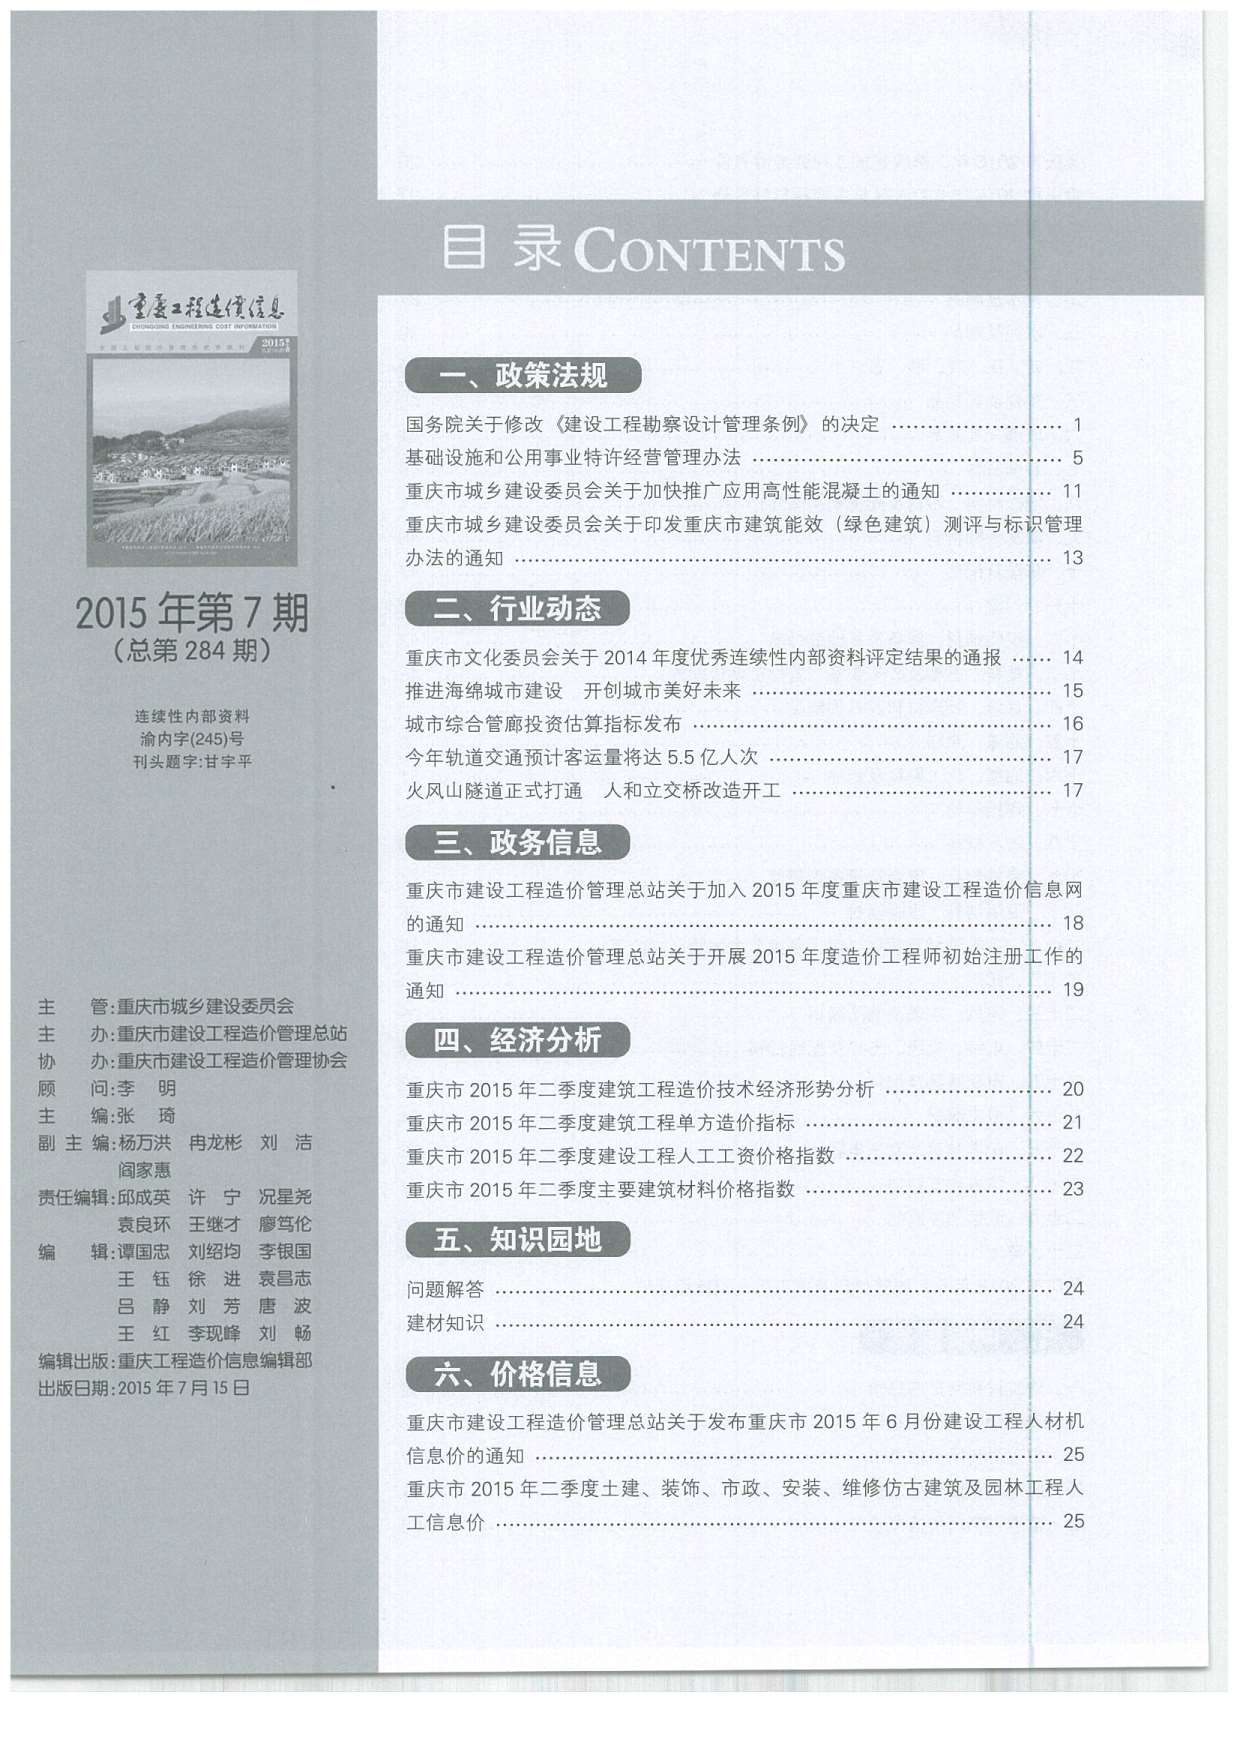 重庆市2015年7月材料信息价